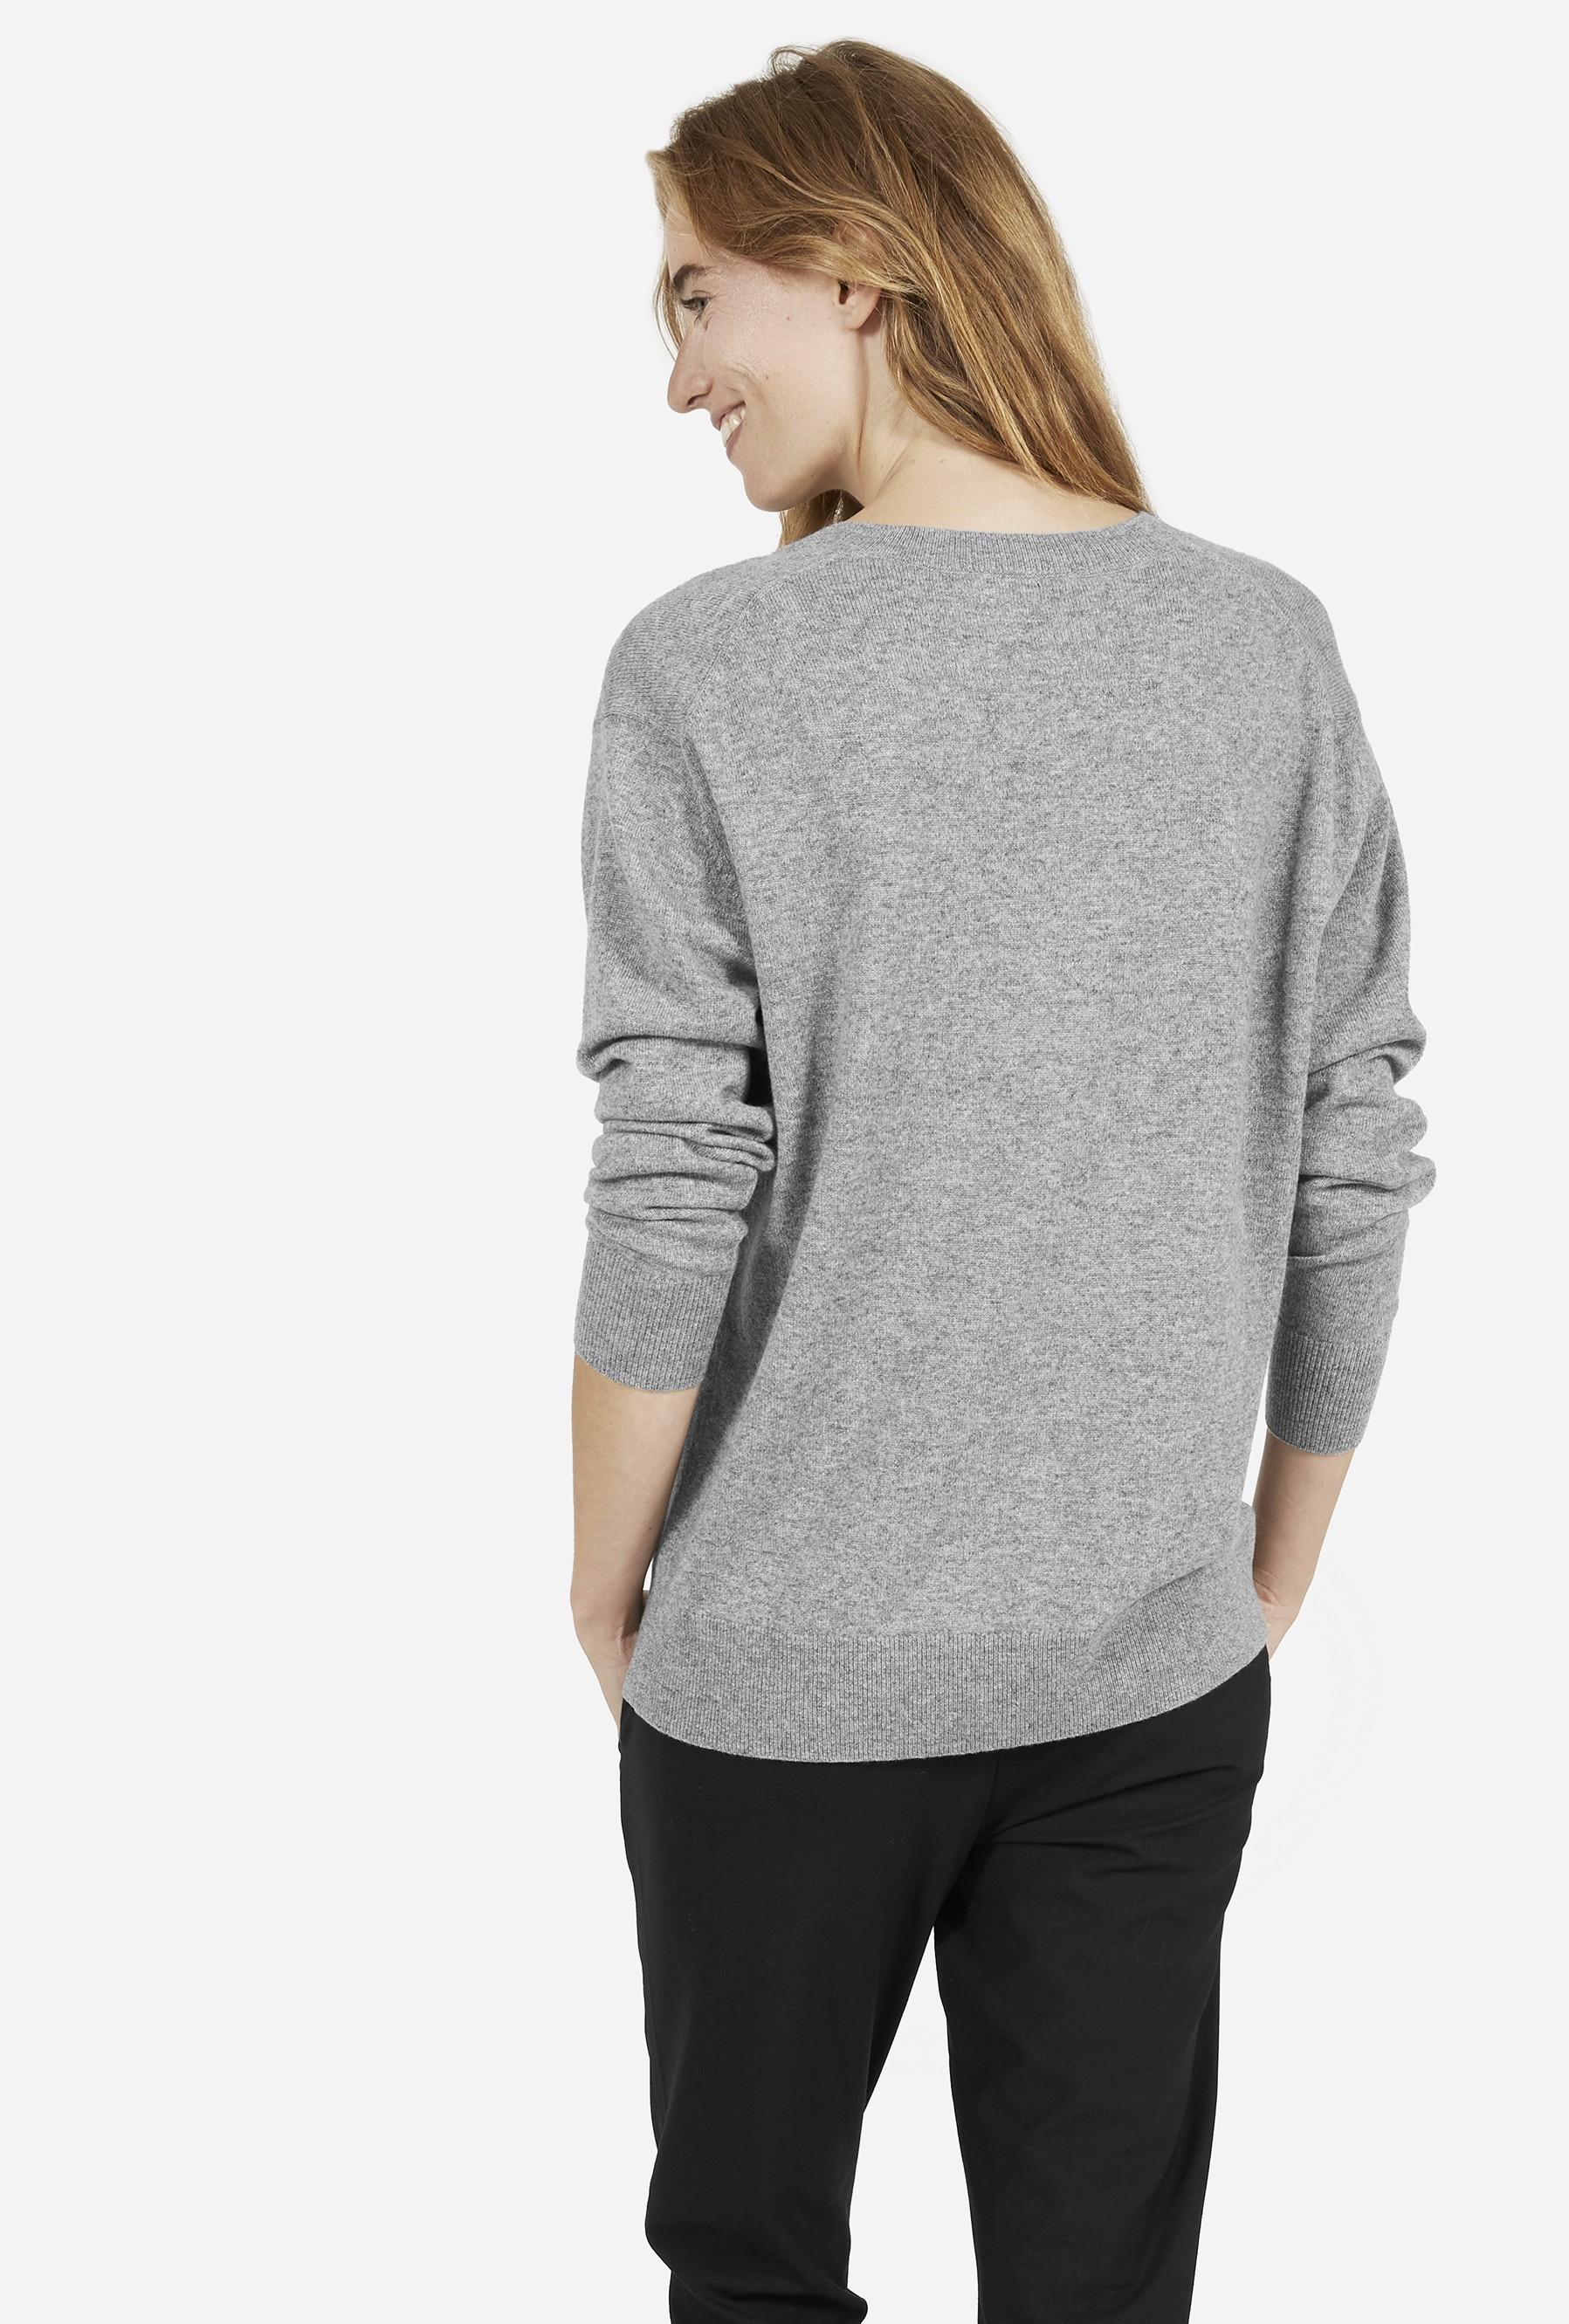 Shoulder everlane cashmere v neck sweaters on sale stores